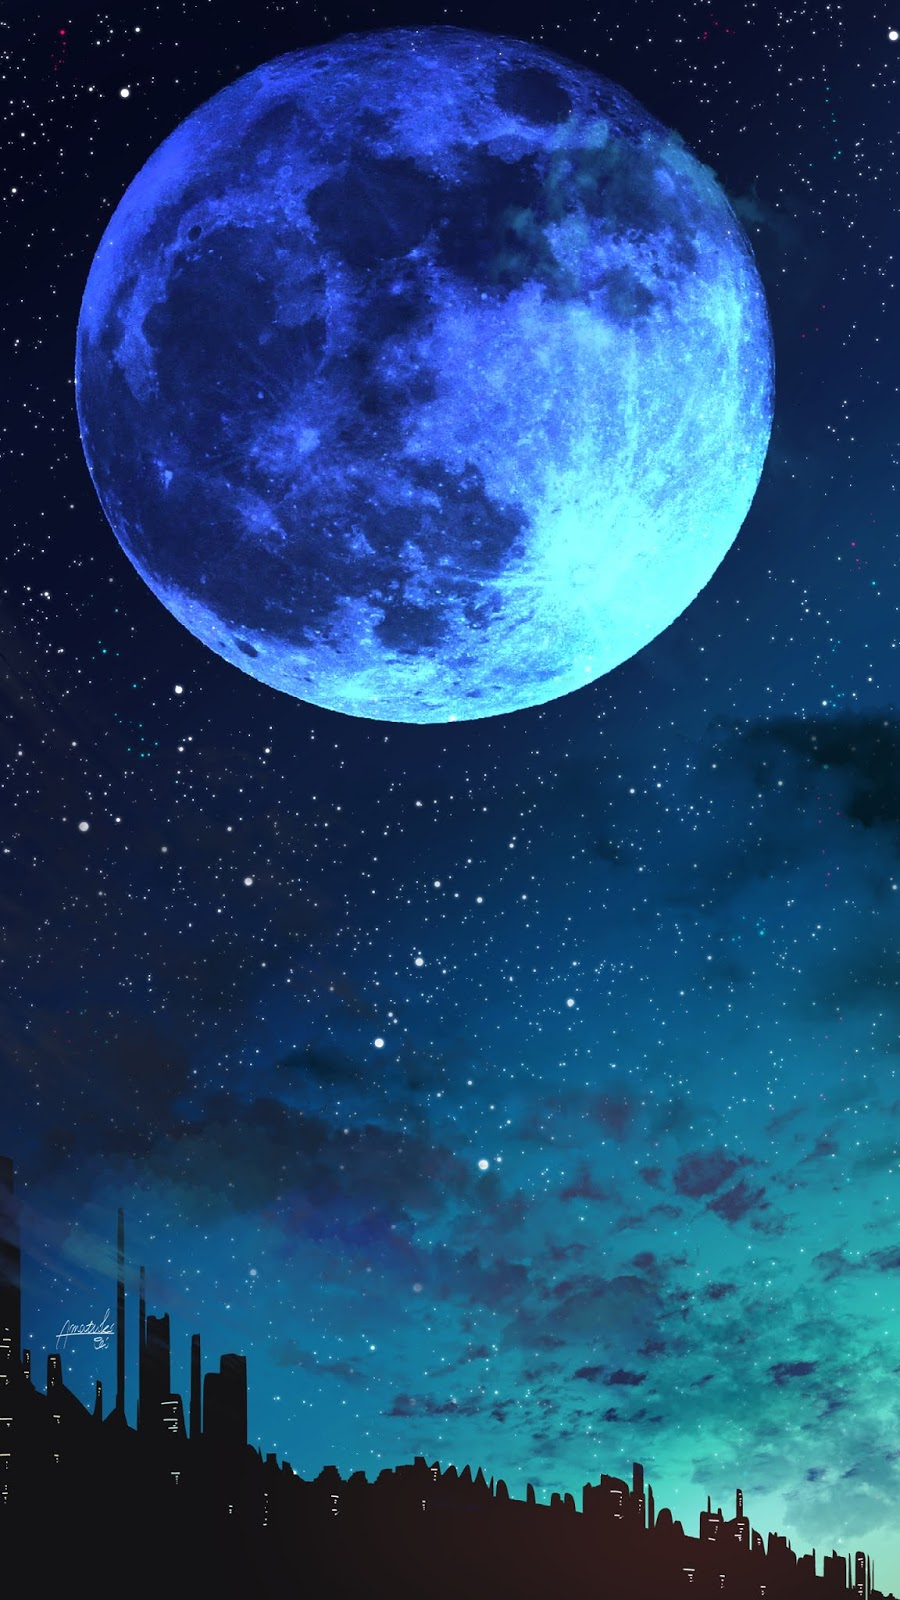 Hiện tượng thiên văn kỳ thú vào Rằm tháng 7: Siêu trăng xanh và mưa sao băng hội ngộ cùng một ngày - Ảnh 2